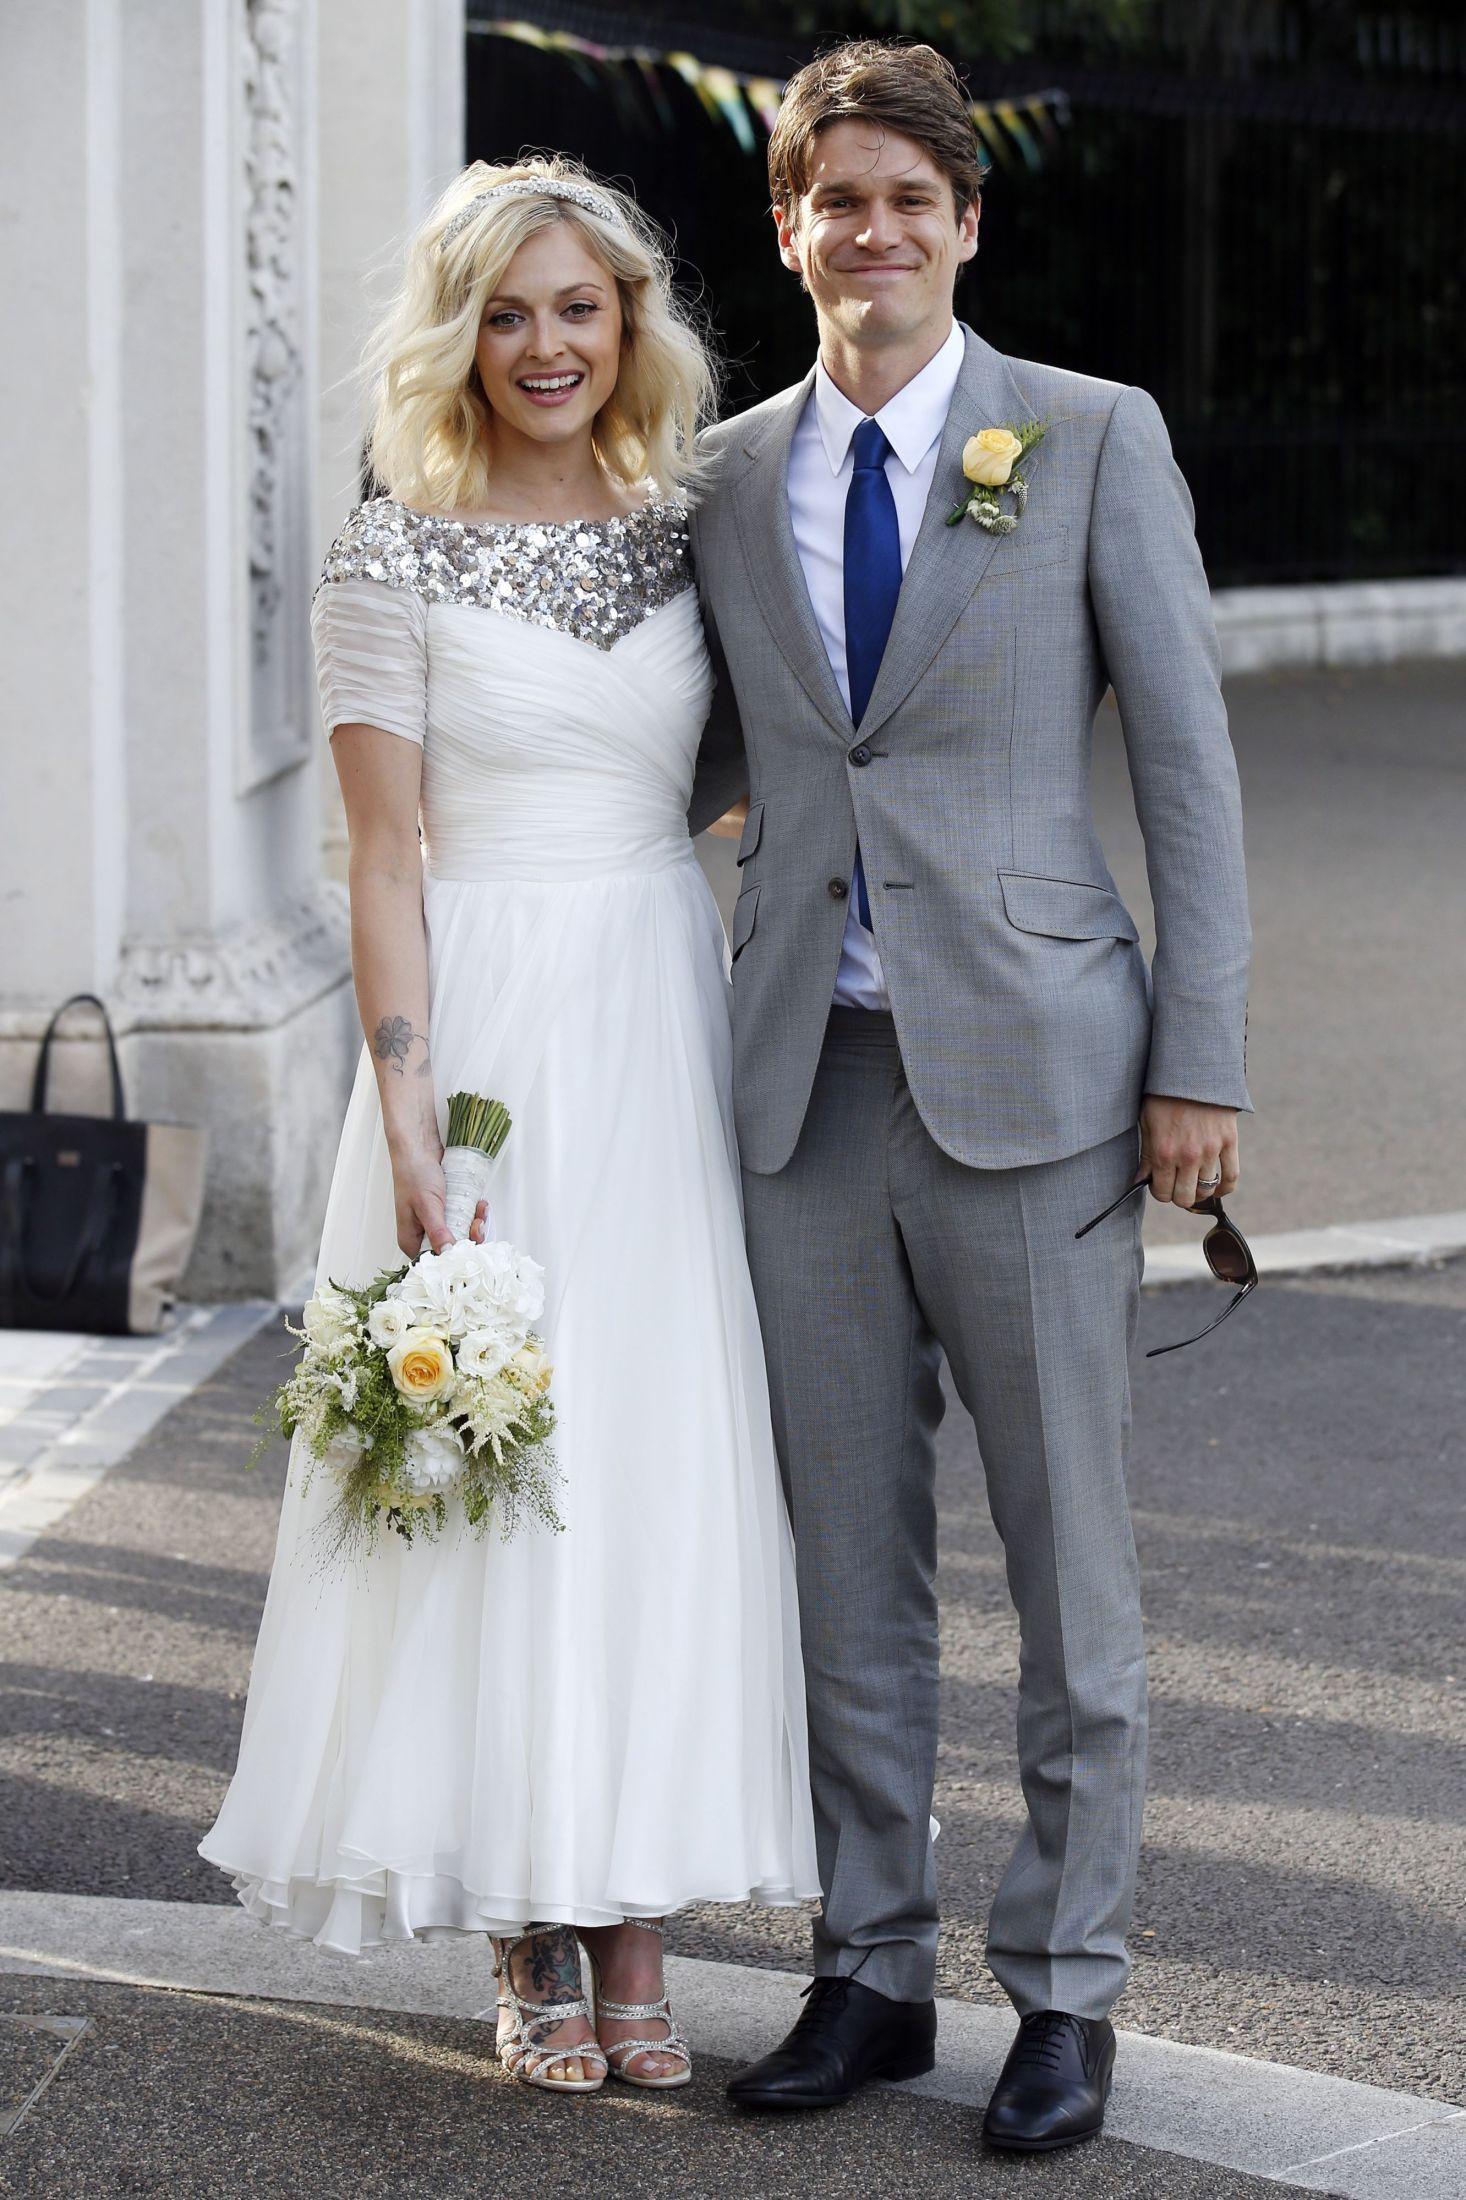 LUKSUSBRUD: Fearne Cotton giftet seg med Jesse Wood i London i kjole fra Emilio Pucci. Foto: Getty Images